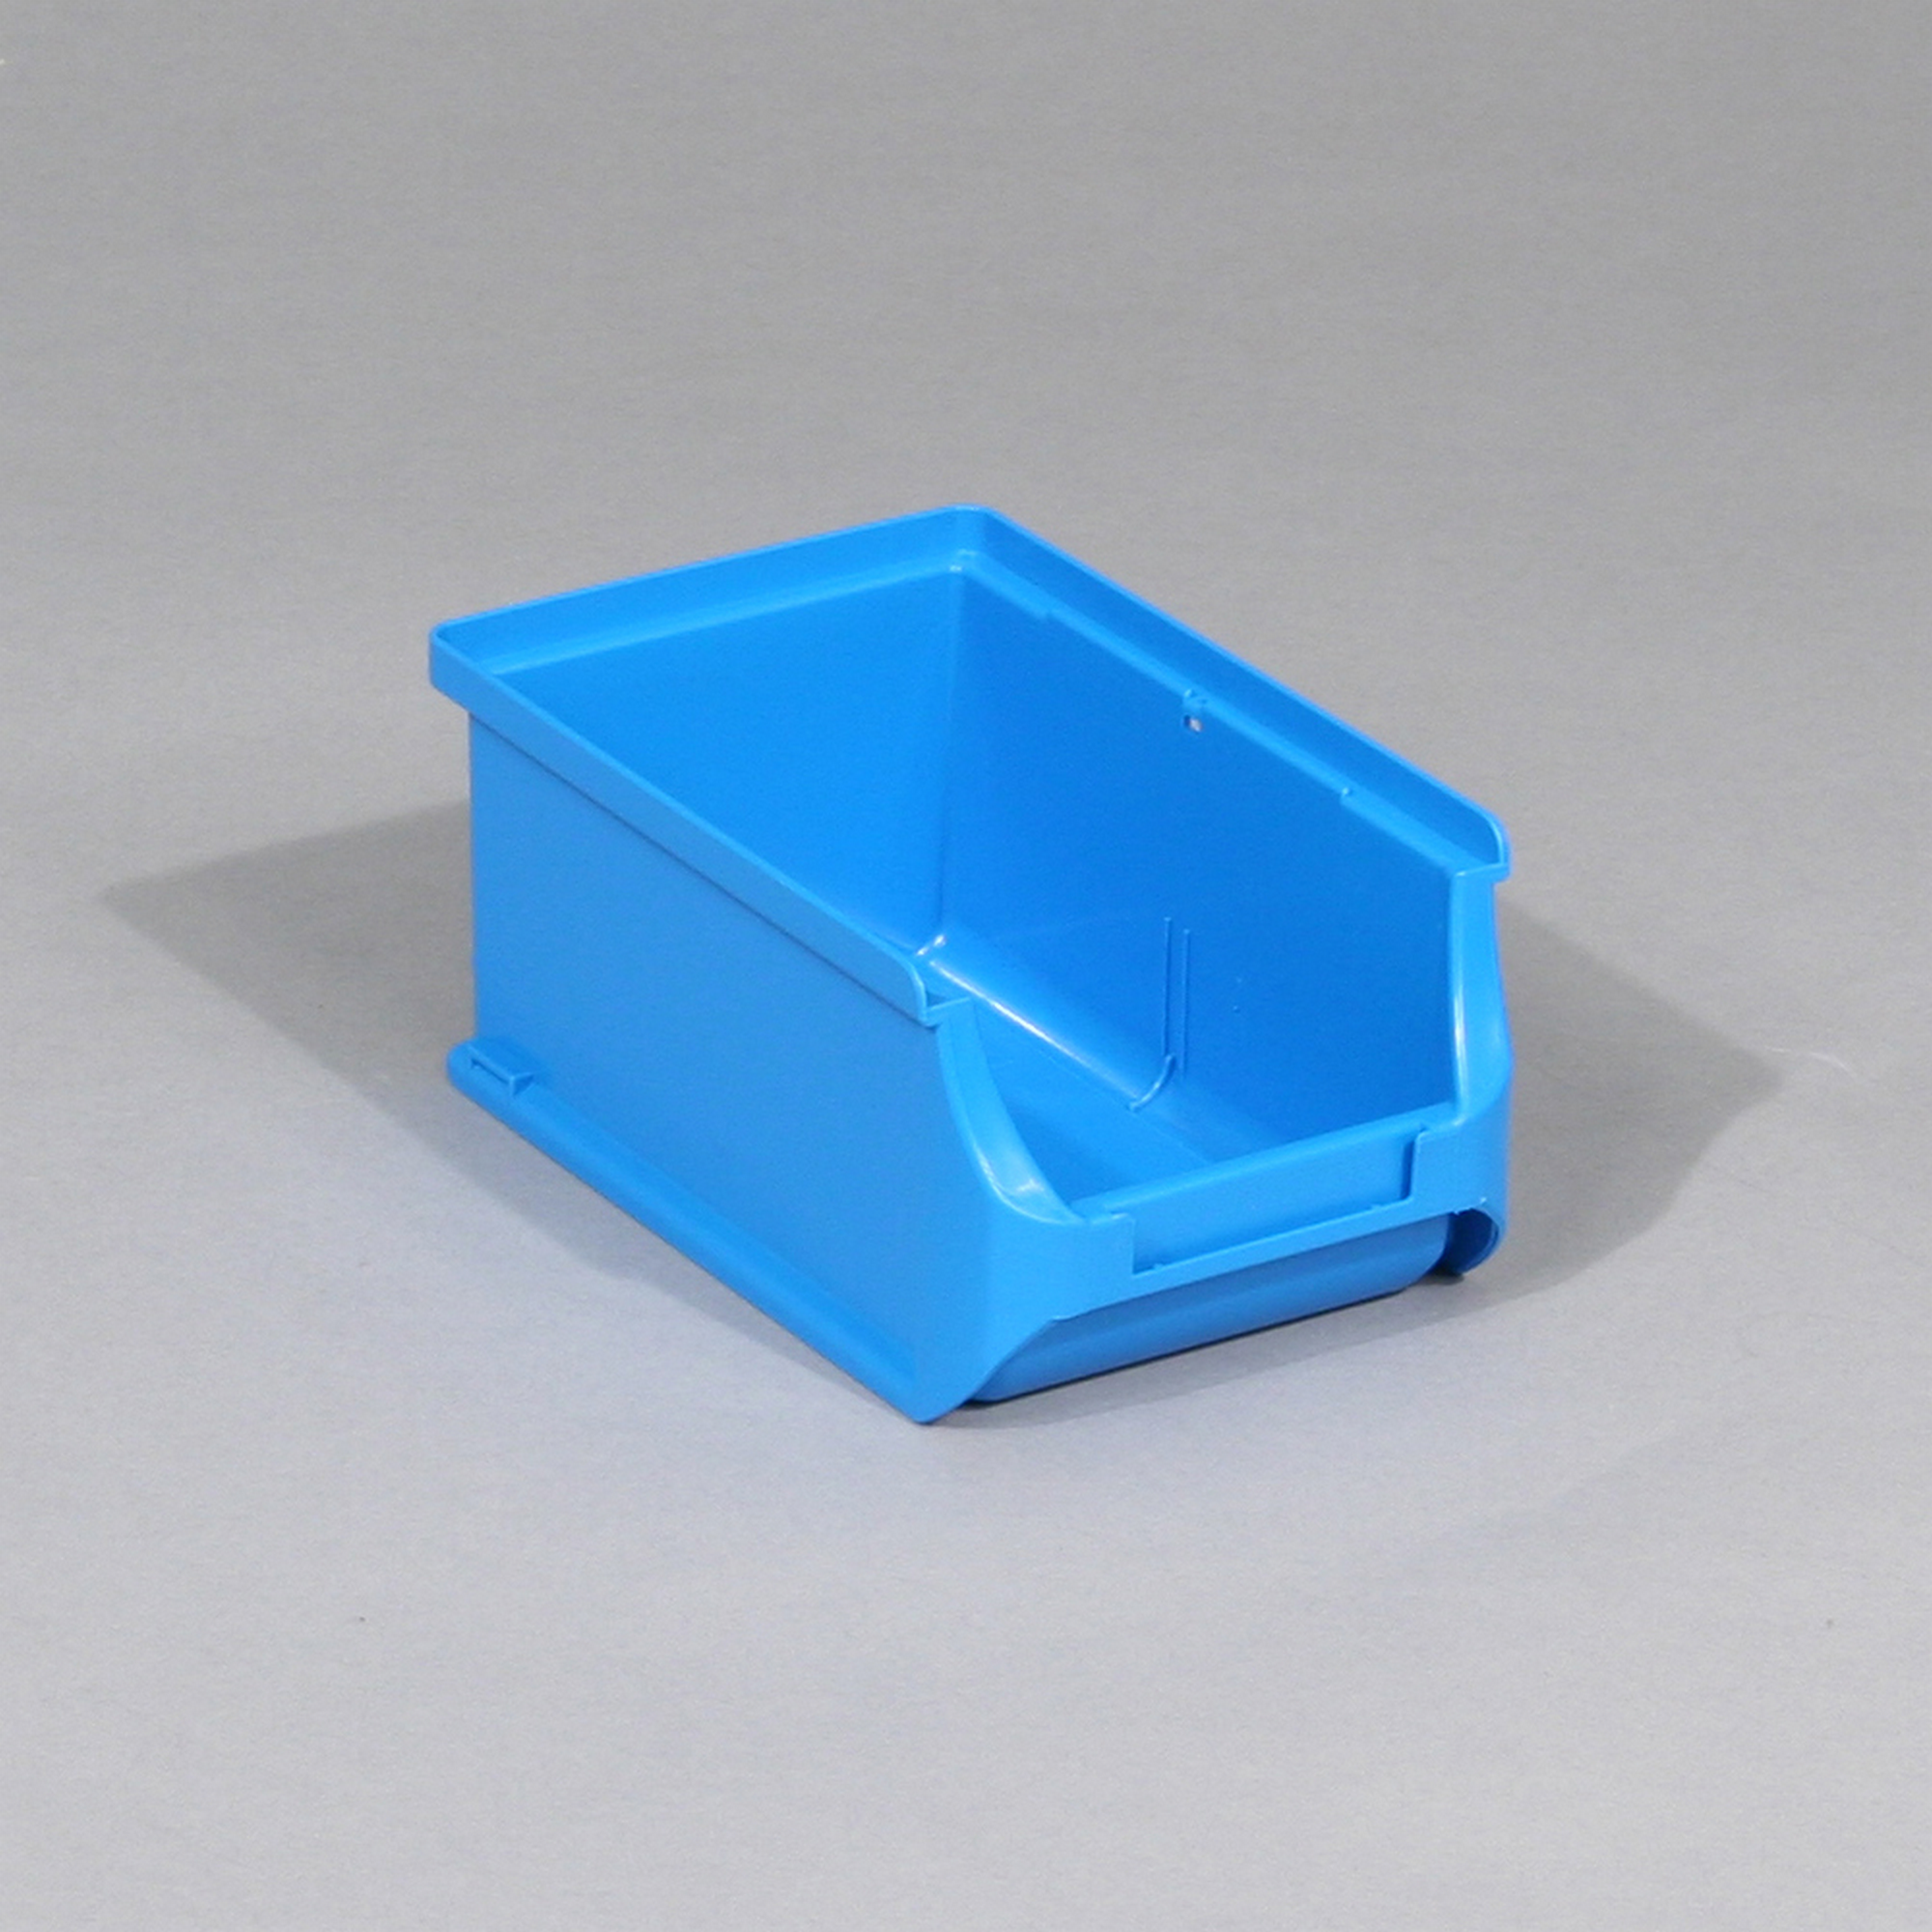 ProfiPlus Stabelsichtbox 'Box 2' blau 16 x 10,2 x 7,5 cm + product picture